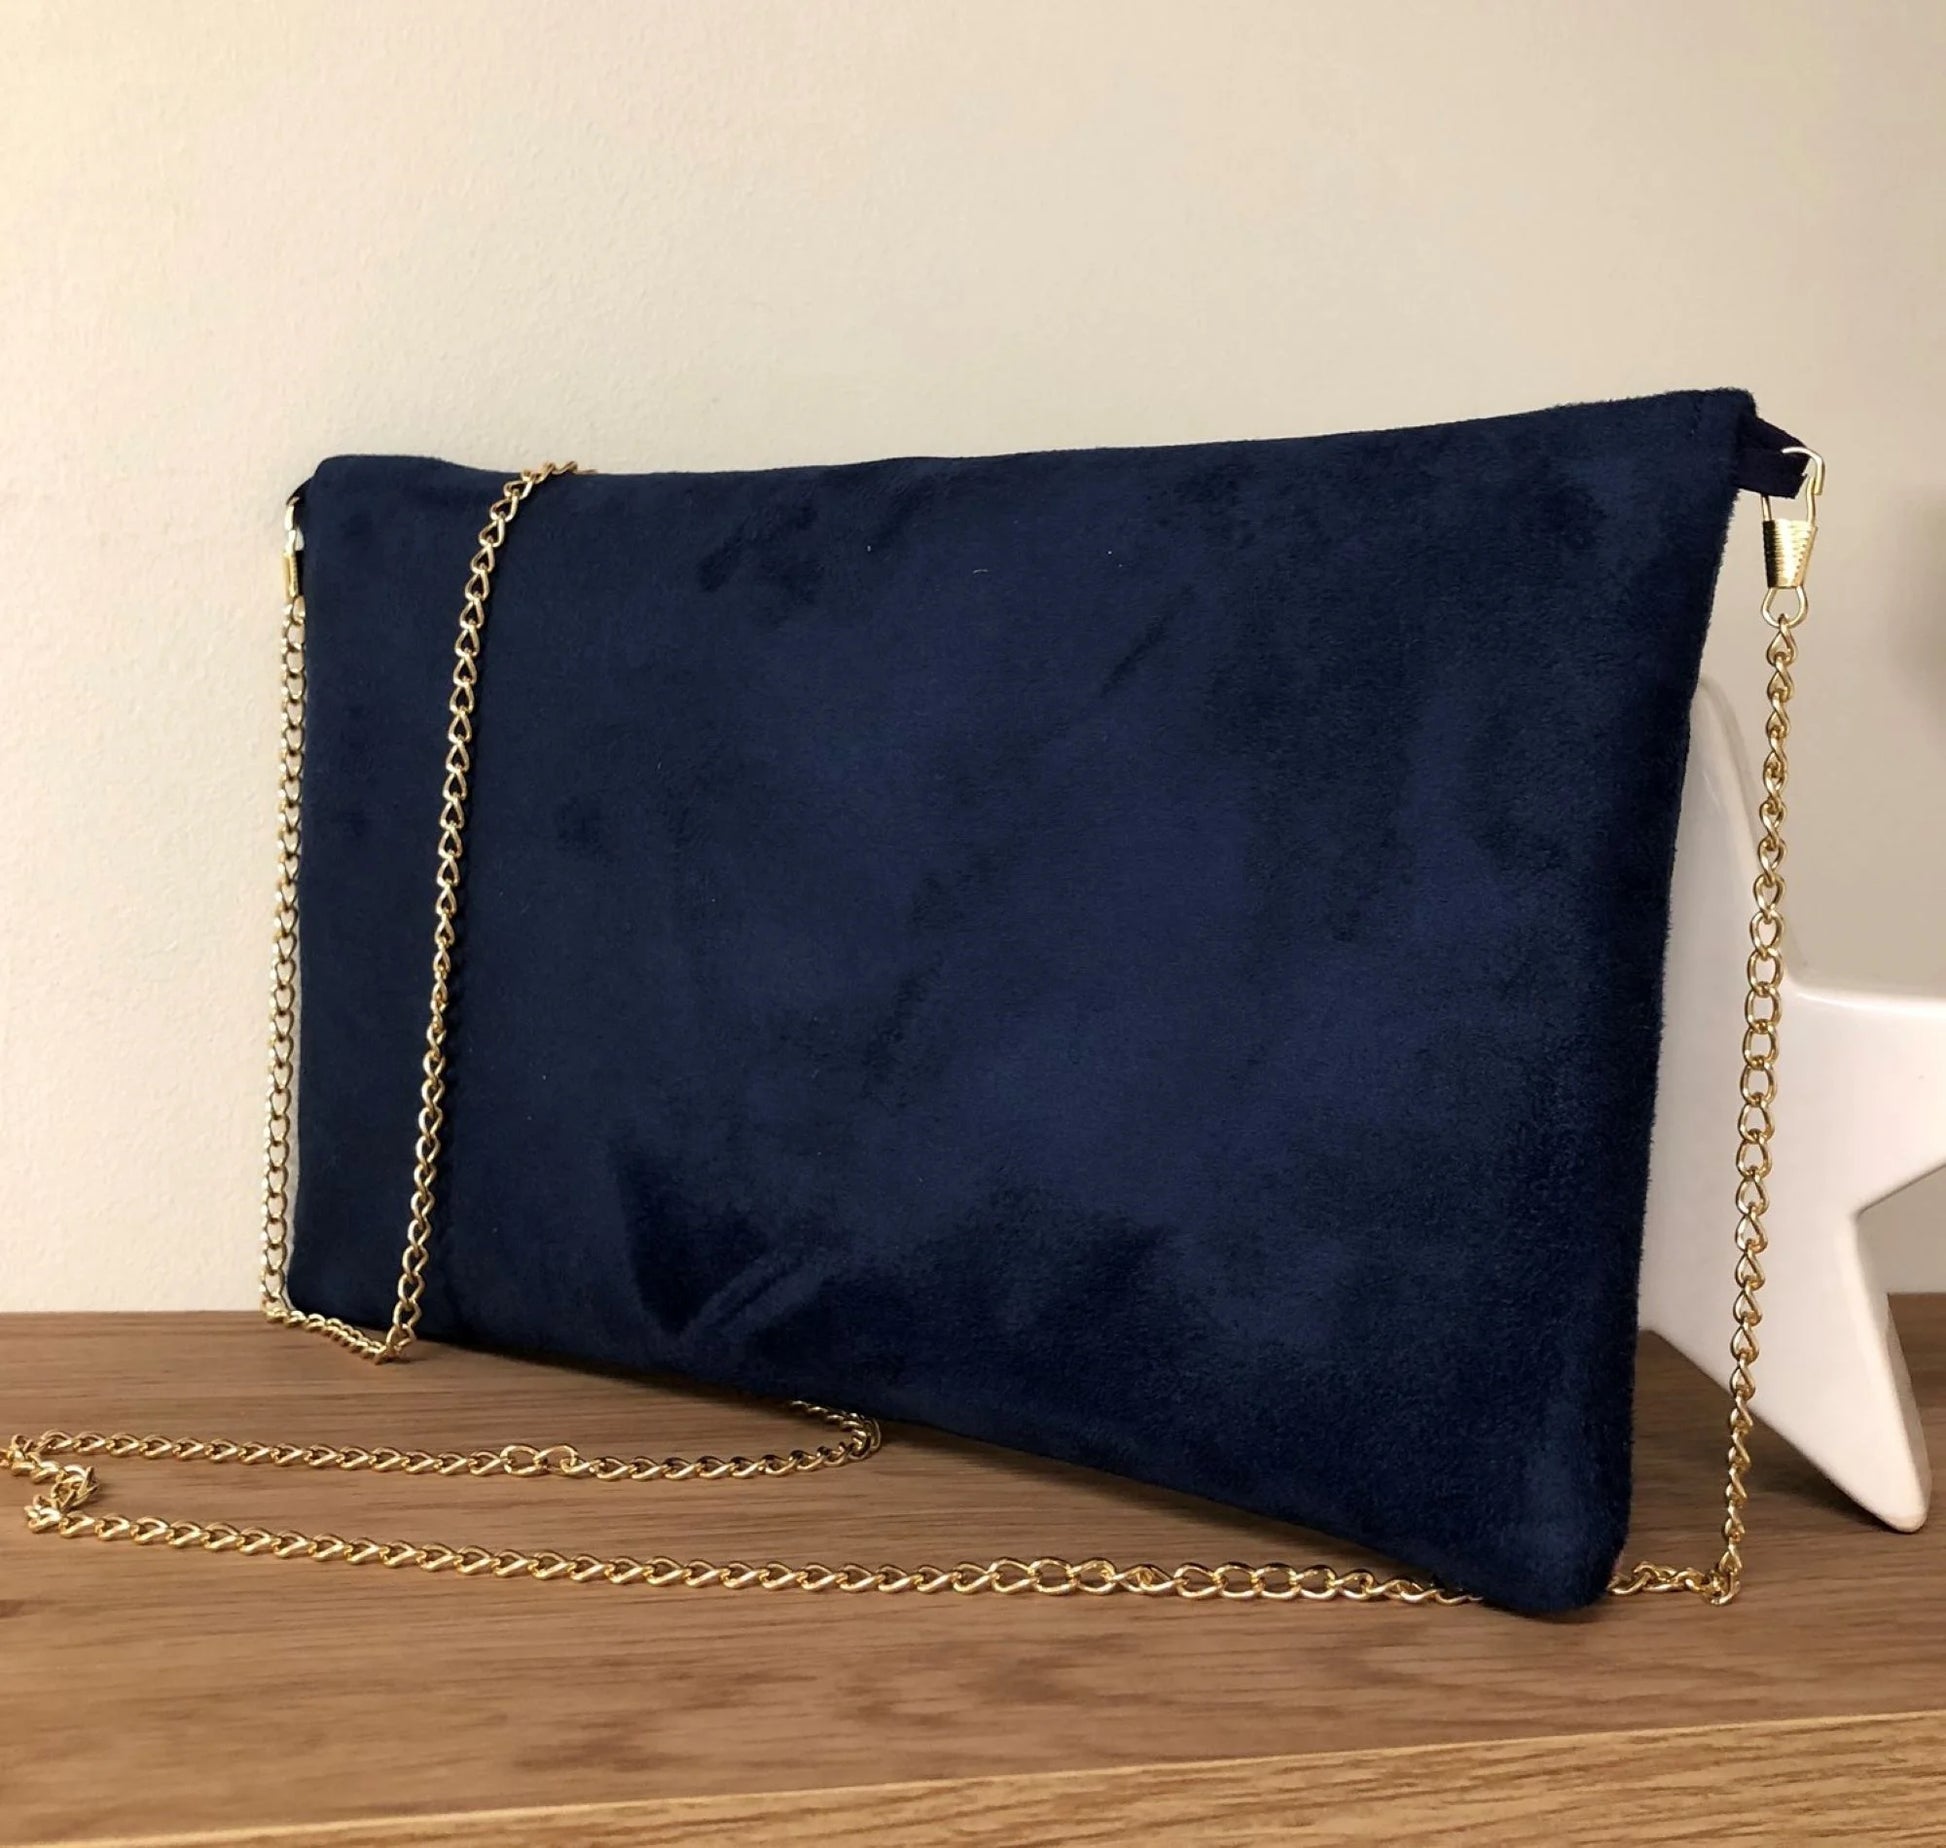 Le sac pochette Isa bleu marine avec tissu japonais fleuri et paillettes dorées, de dos.